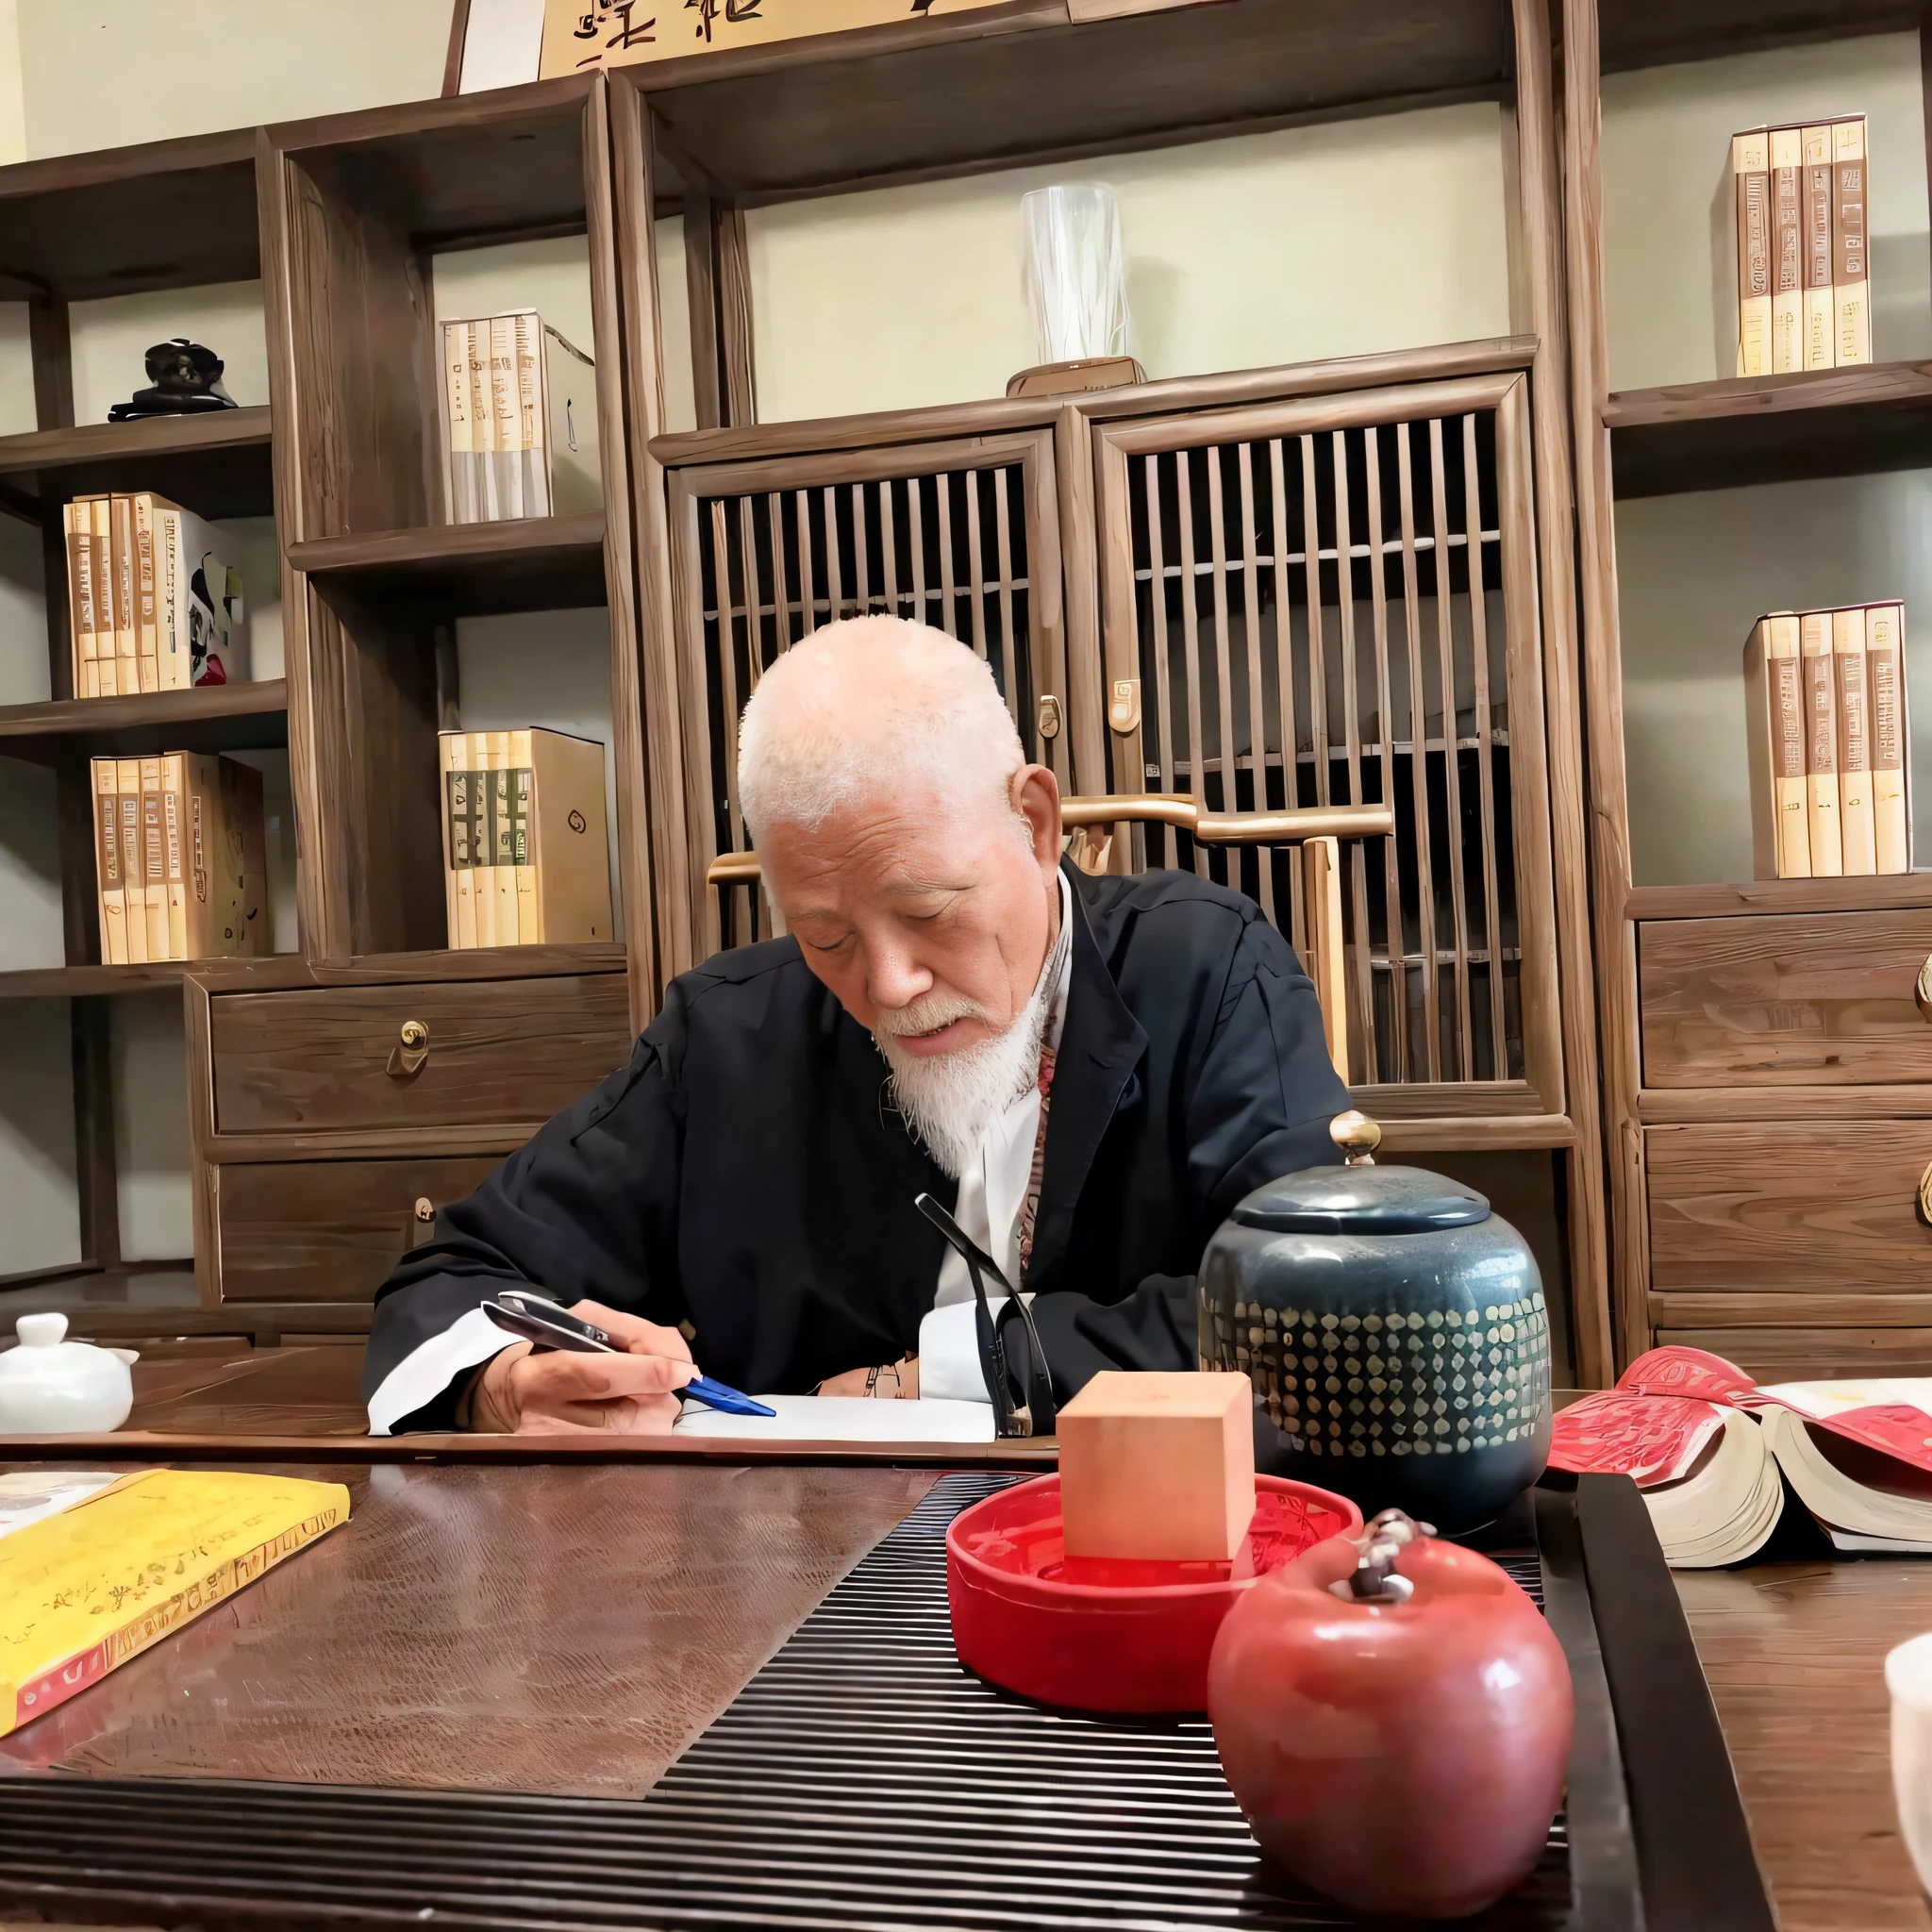 كان هناك رجل يجلس على طاولة ويكتب كتابا, مستوحاة من Sesshū Tōyō, يبلغ من العمر حوالي 80 عامًا, riichi ueshiba, تشيبا يودا, مستوحى من إيتو جاكوتشو, مستوحاة من وو داوزي, مستوحى من كانو تانشين